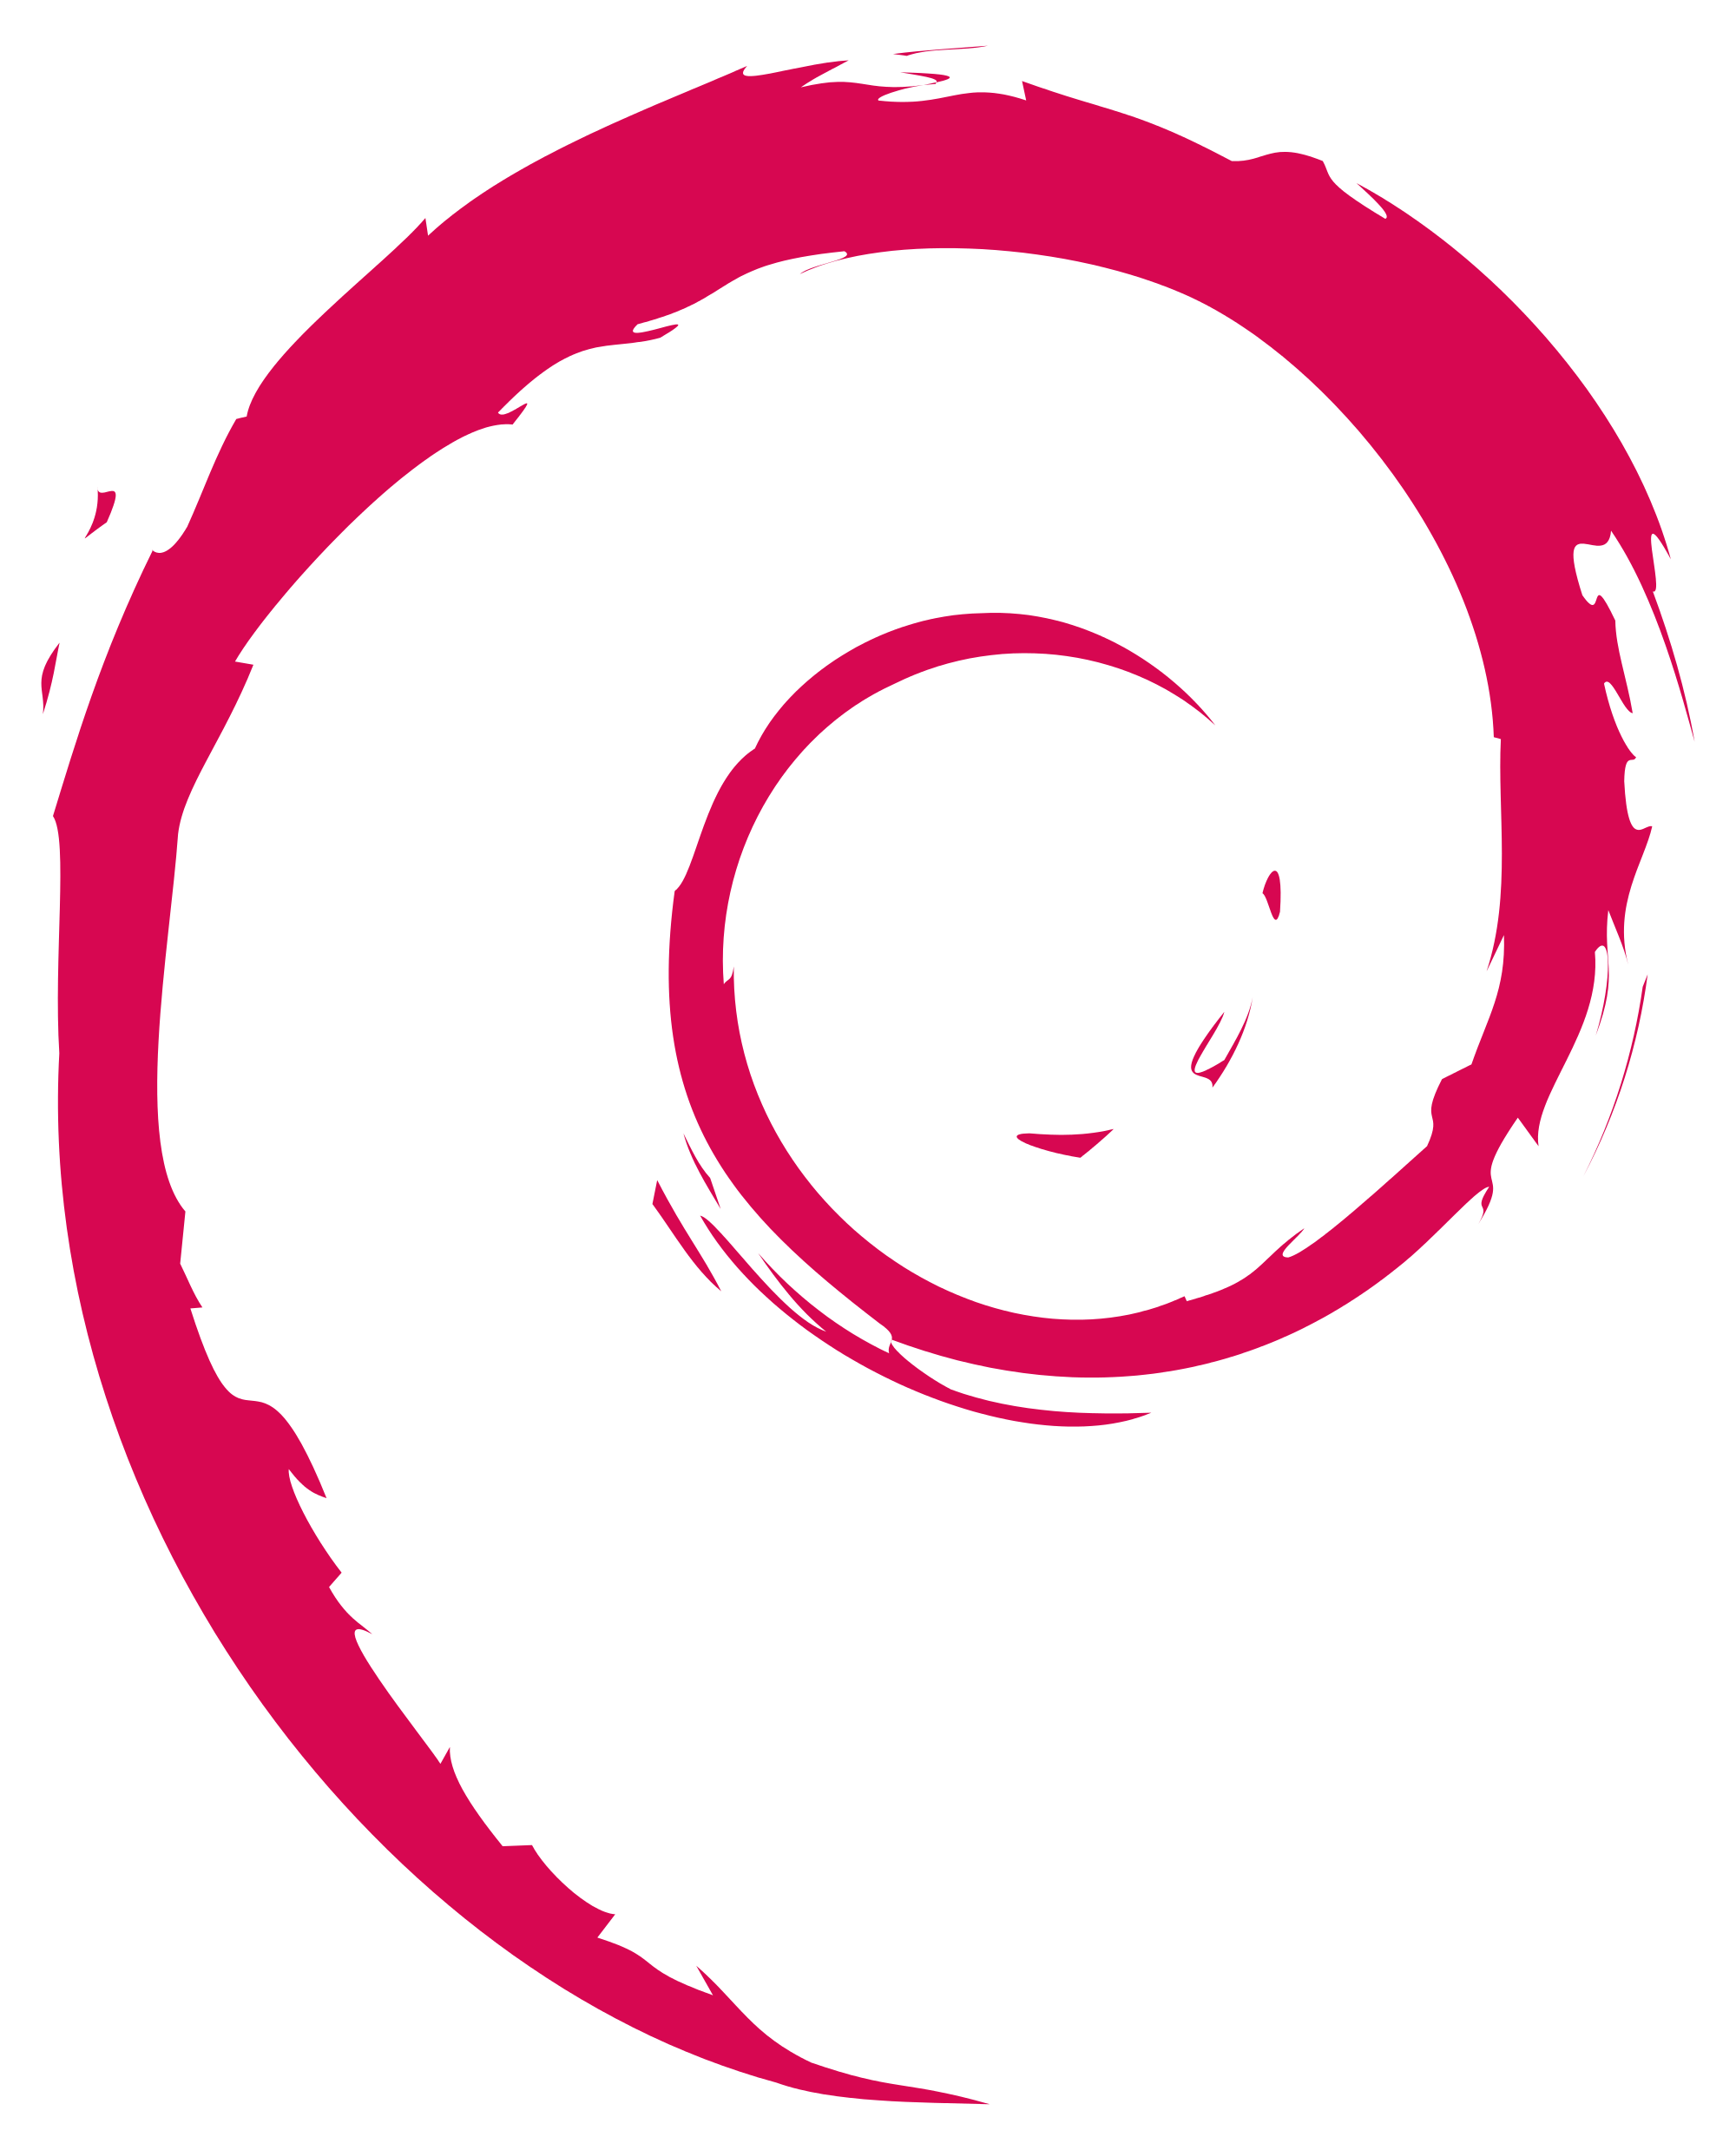 Debian Logo - File:Openlogo-debianV2.svg - Wikimedia Commons